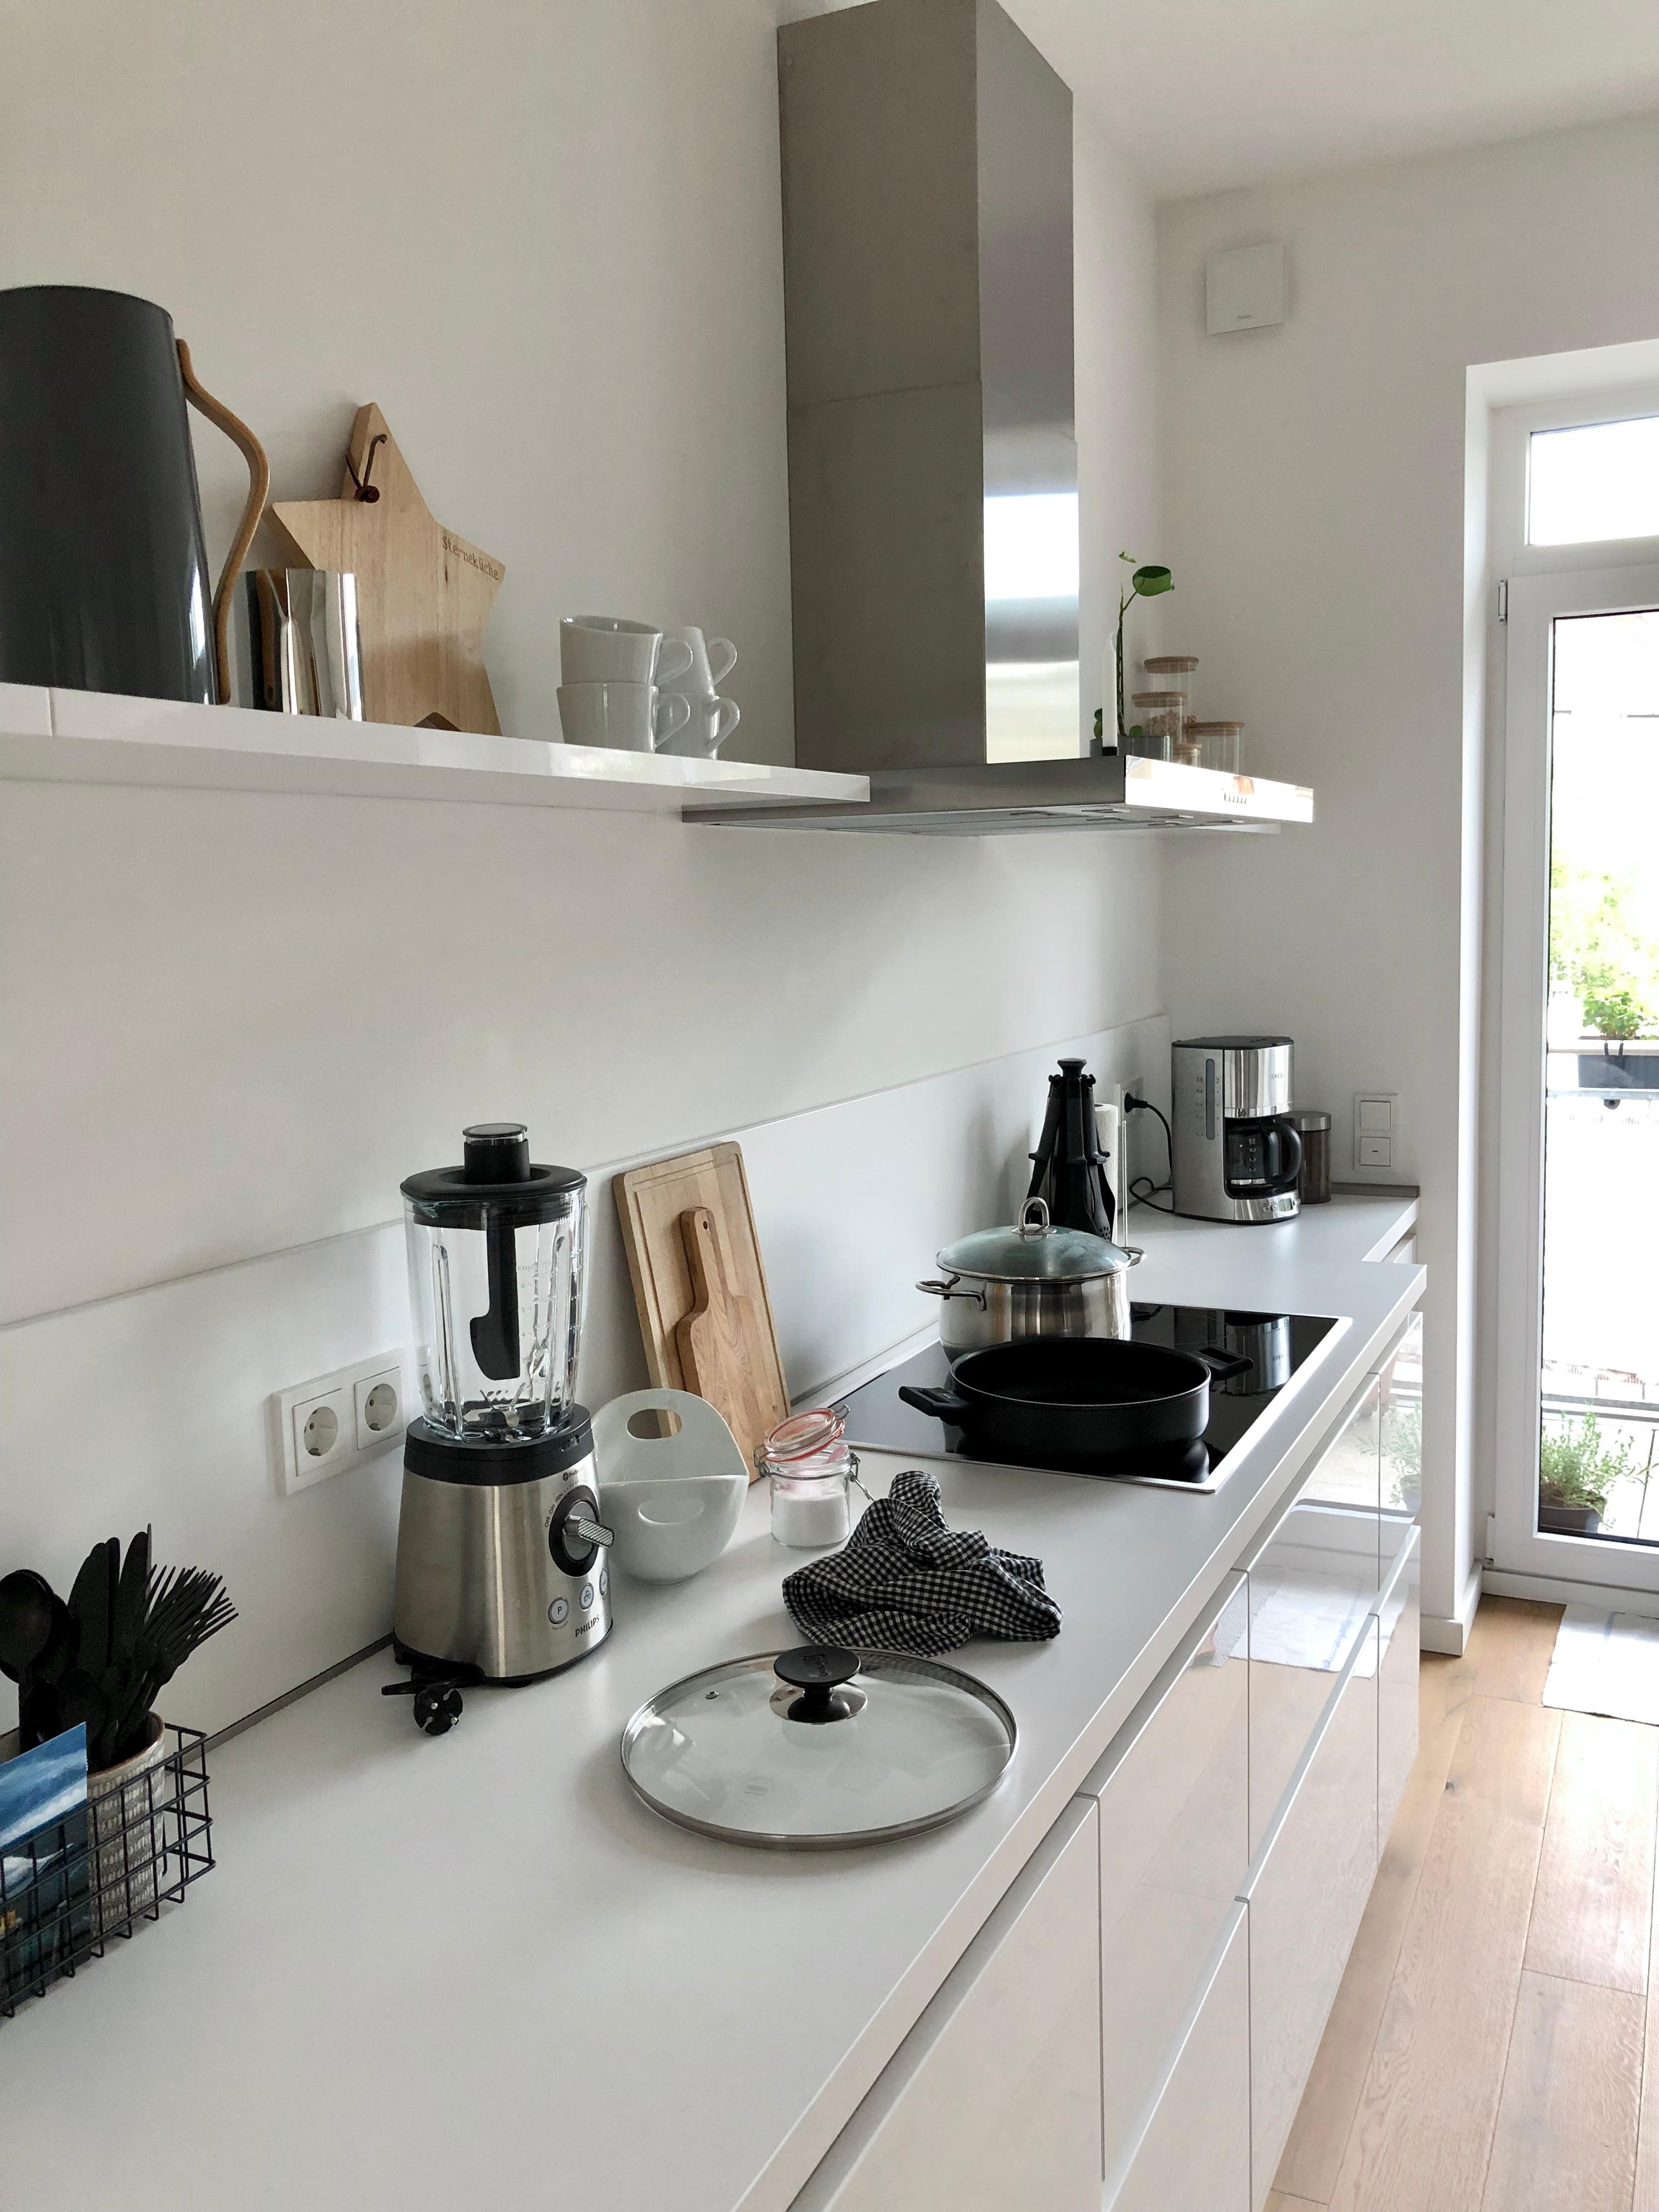 Mein #einrichtungsstil – nordisch/minimalistisch – auf der Suche nach dem gewissen Etwas 😅
#küche #kitchen